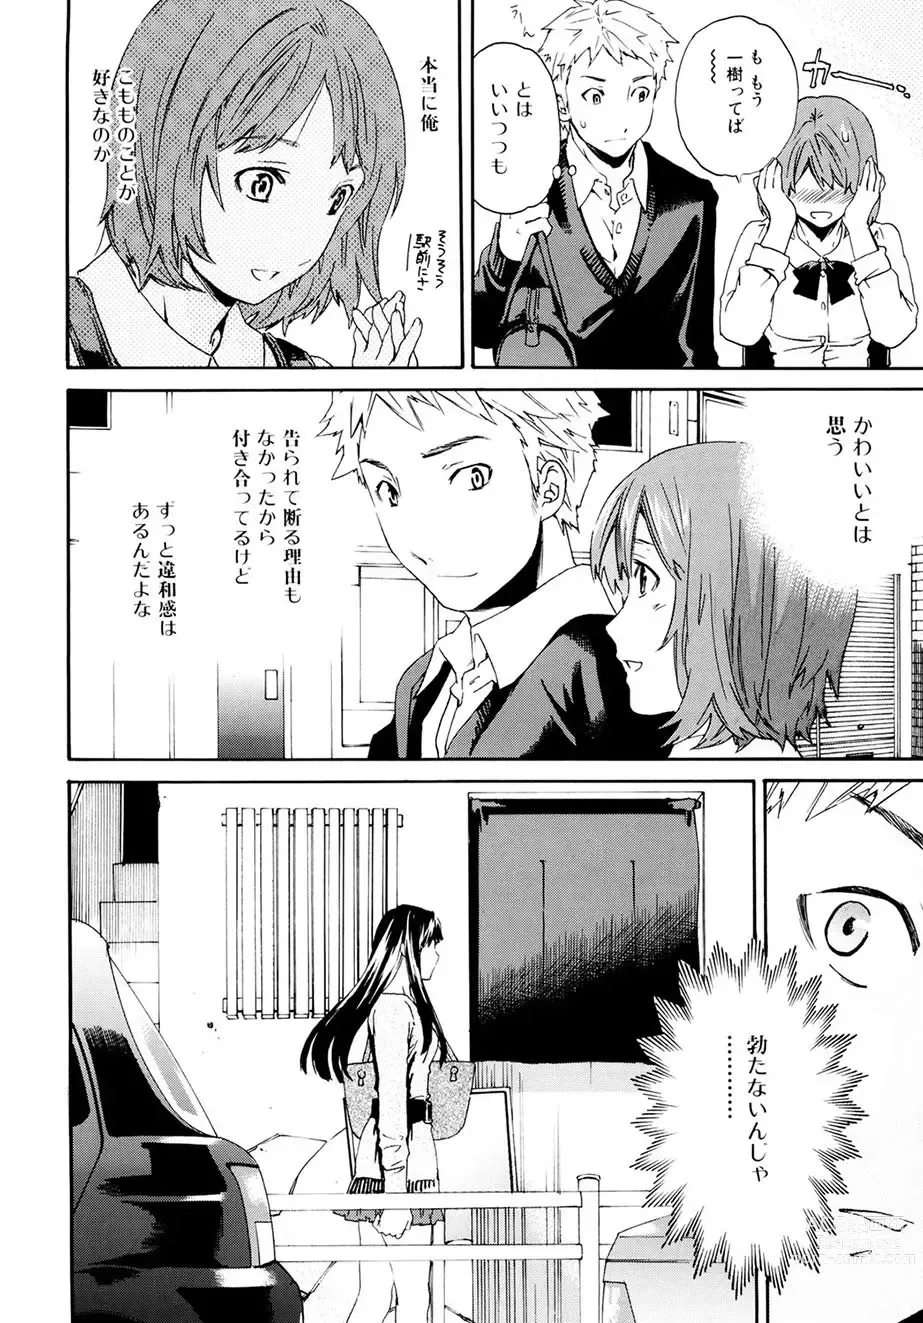 Page 7 of manga Shitai Kara Suru no